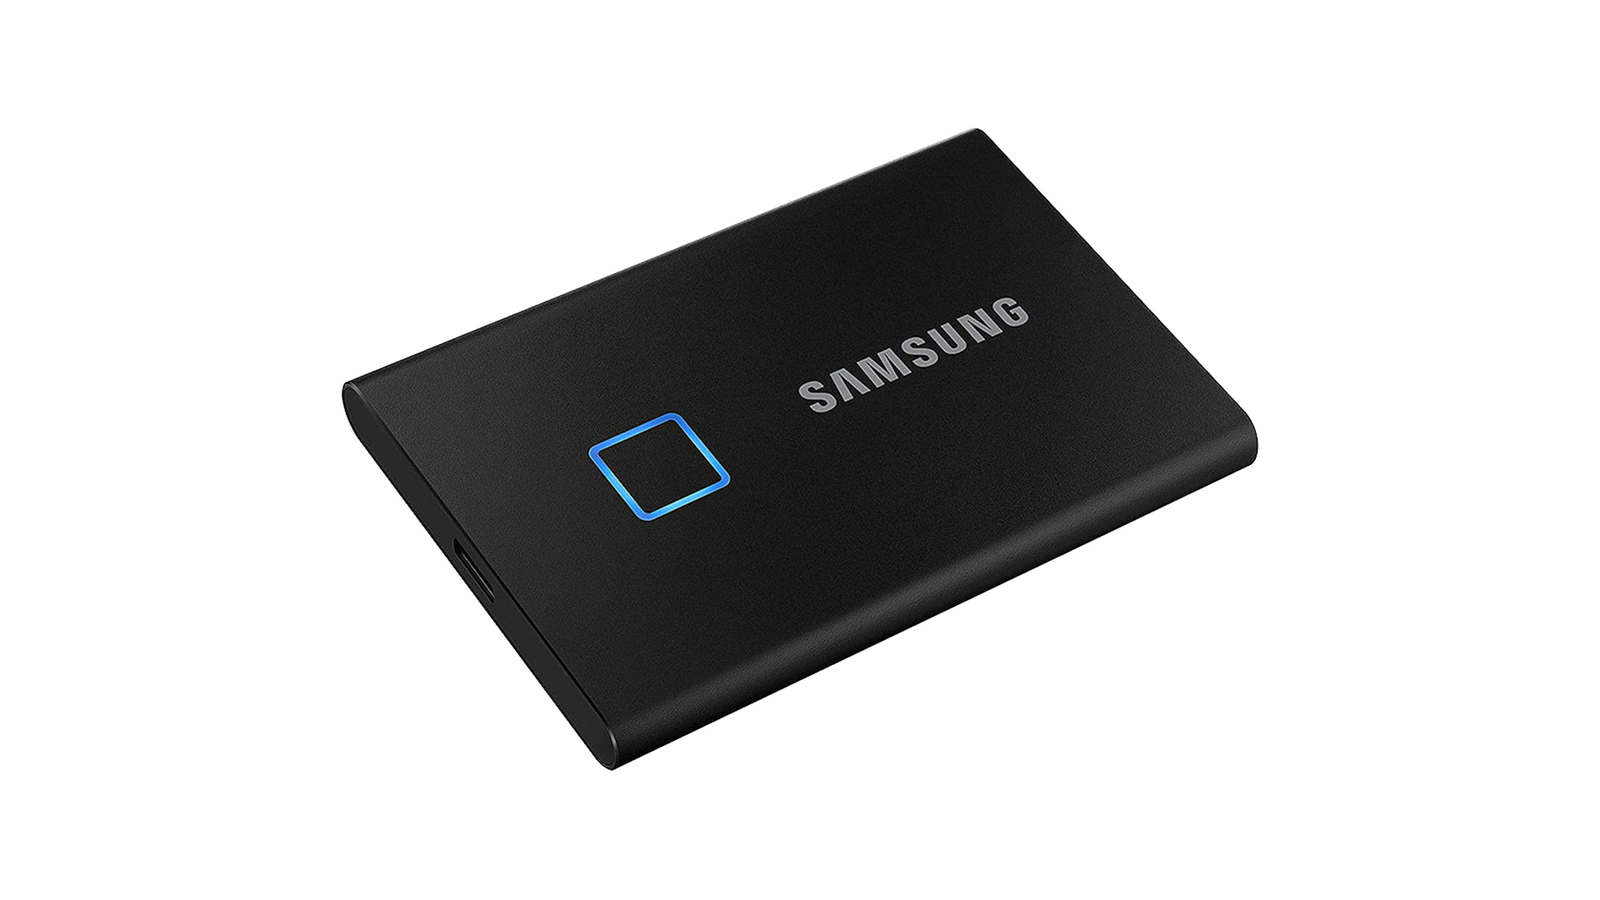 Samsung T7 Touch - Speedy external SSD drive